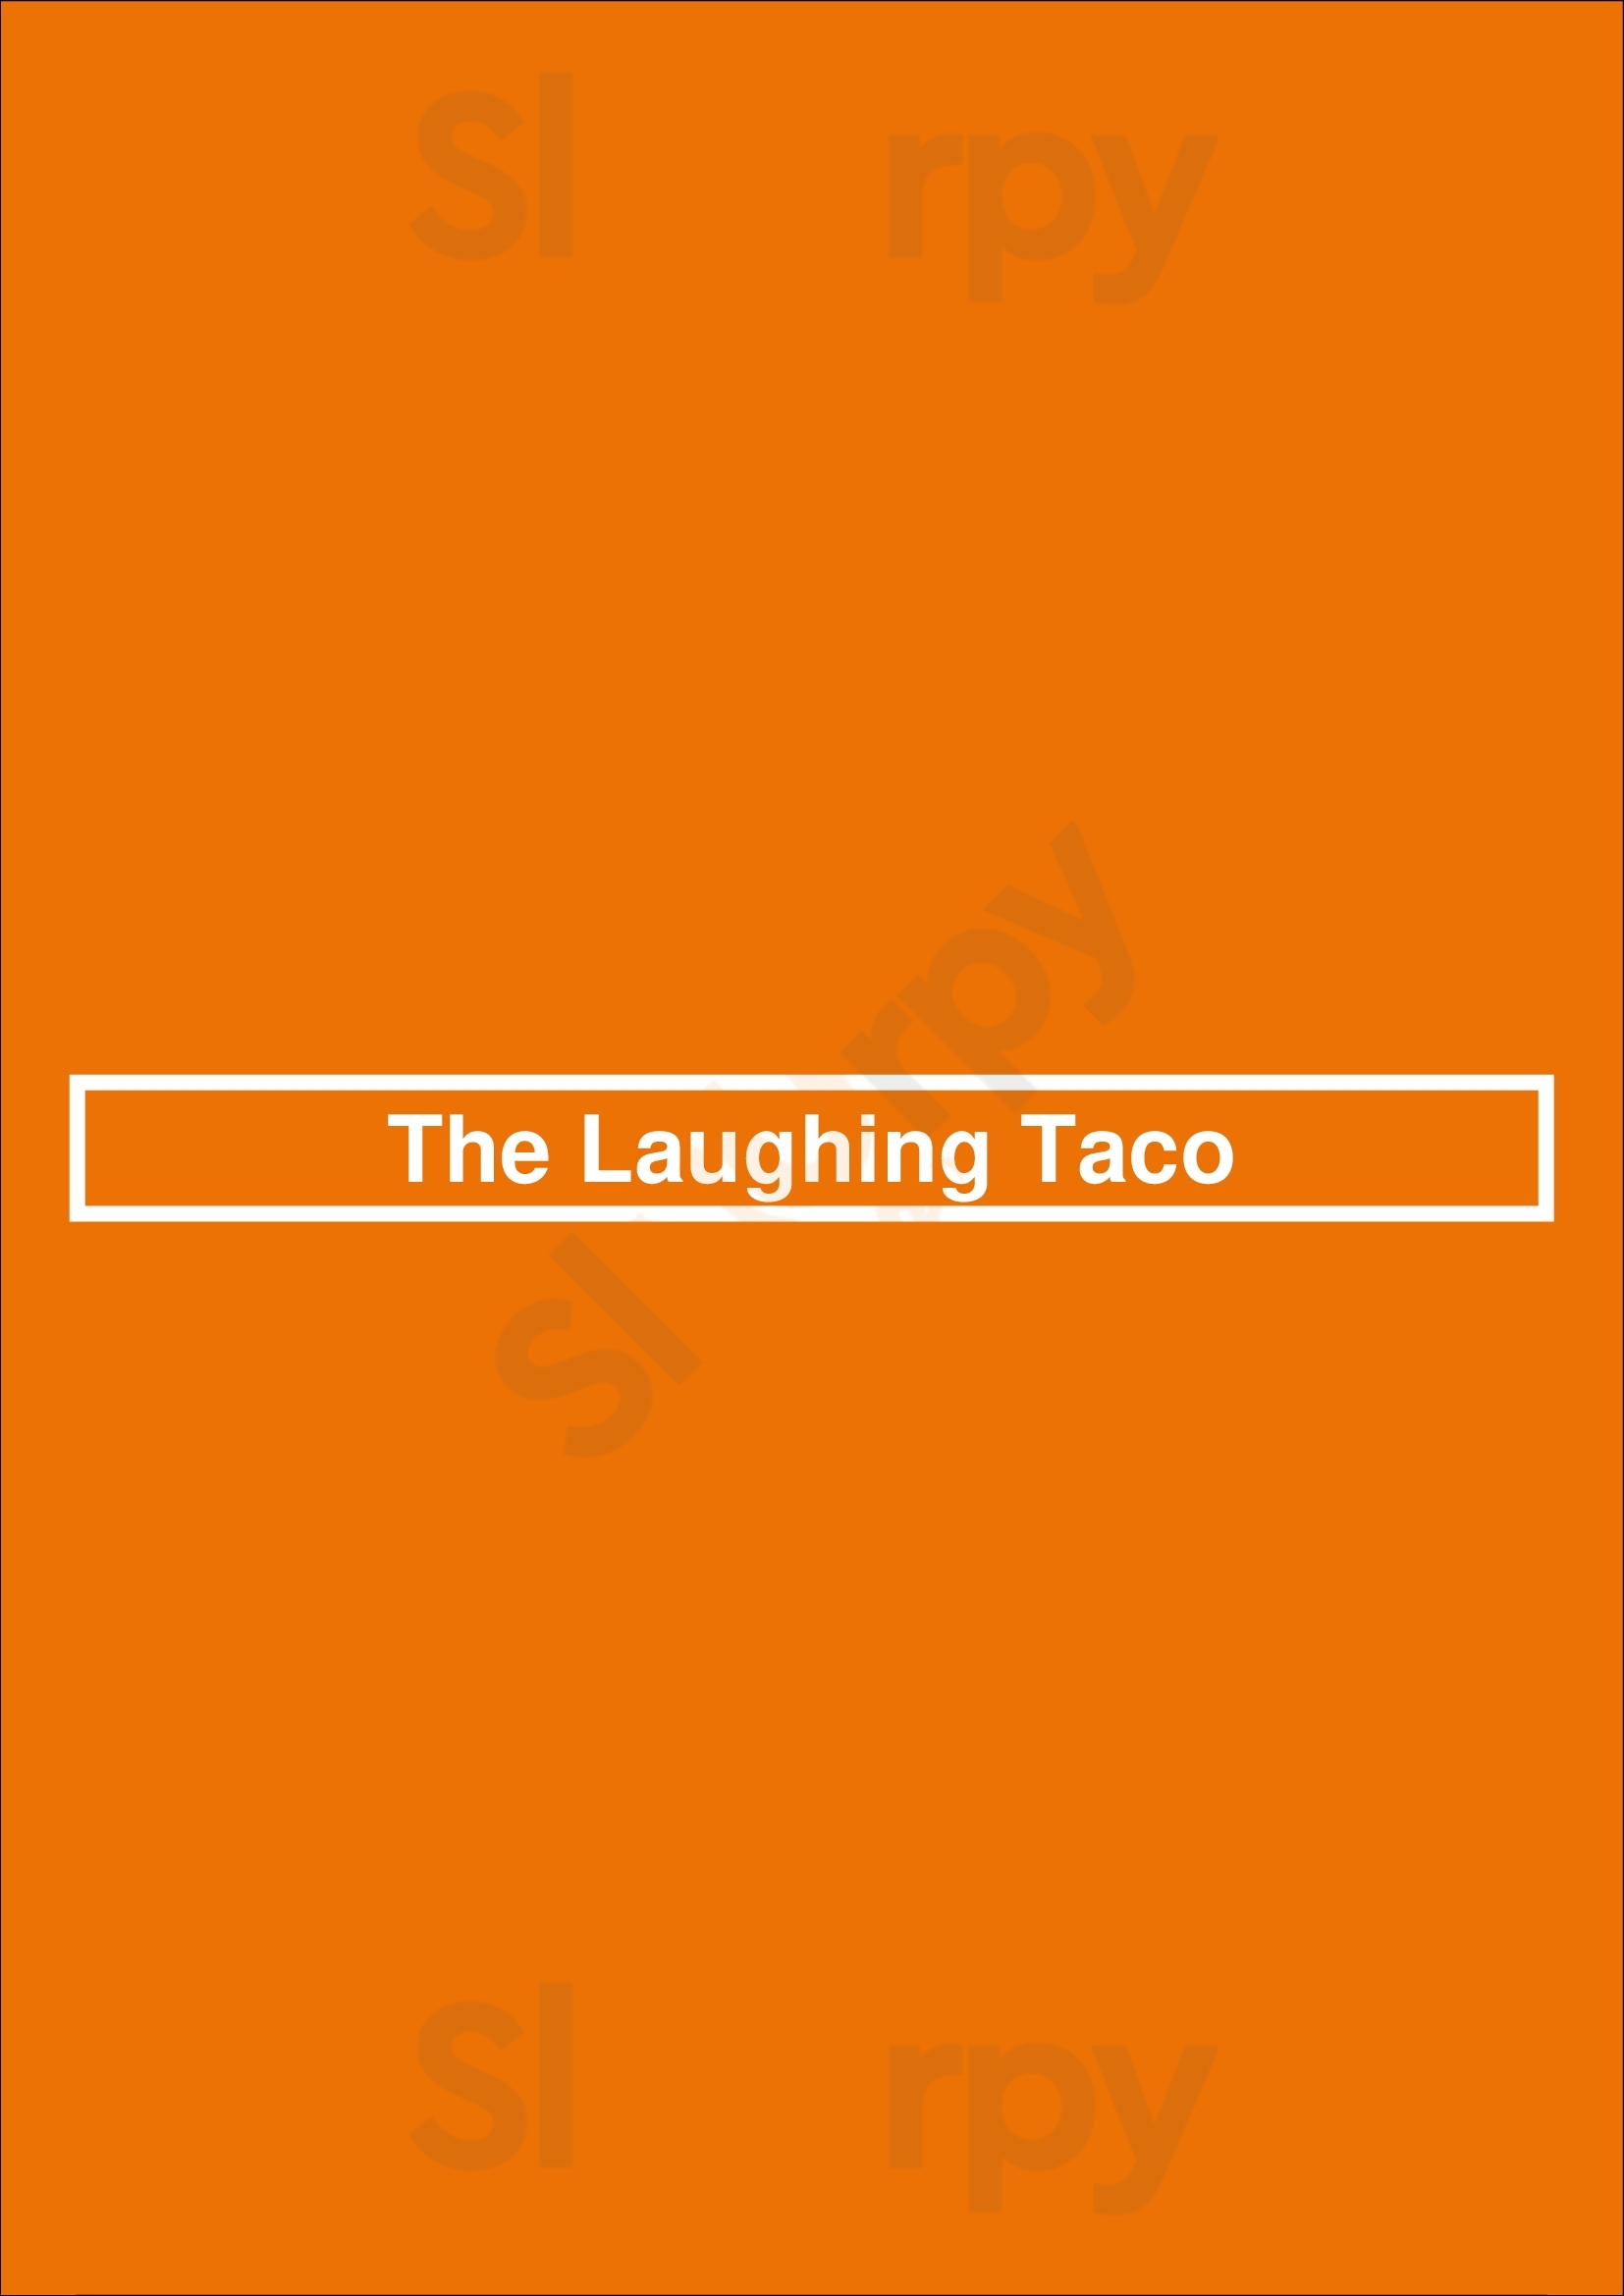 The Laughing Taco Milwaukee Menu - 1